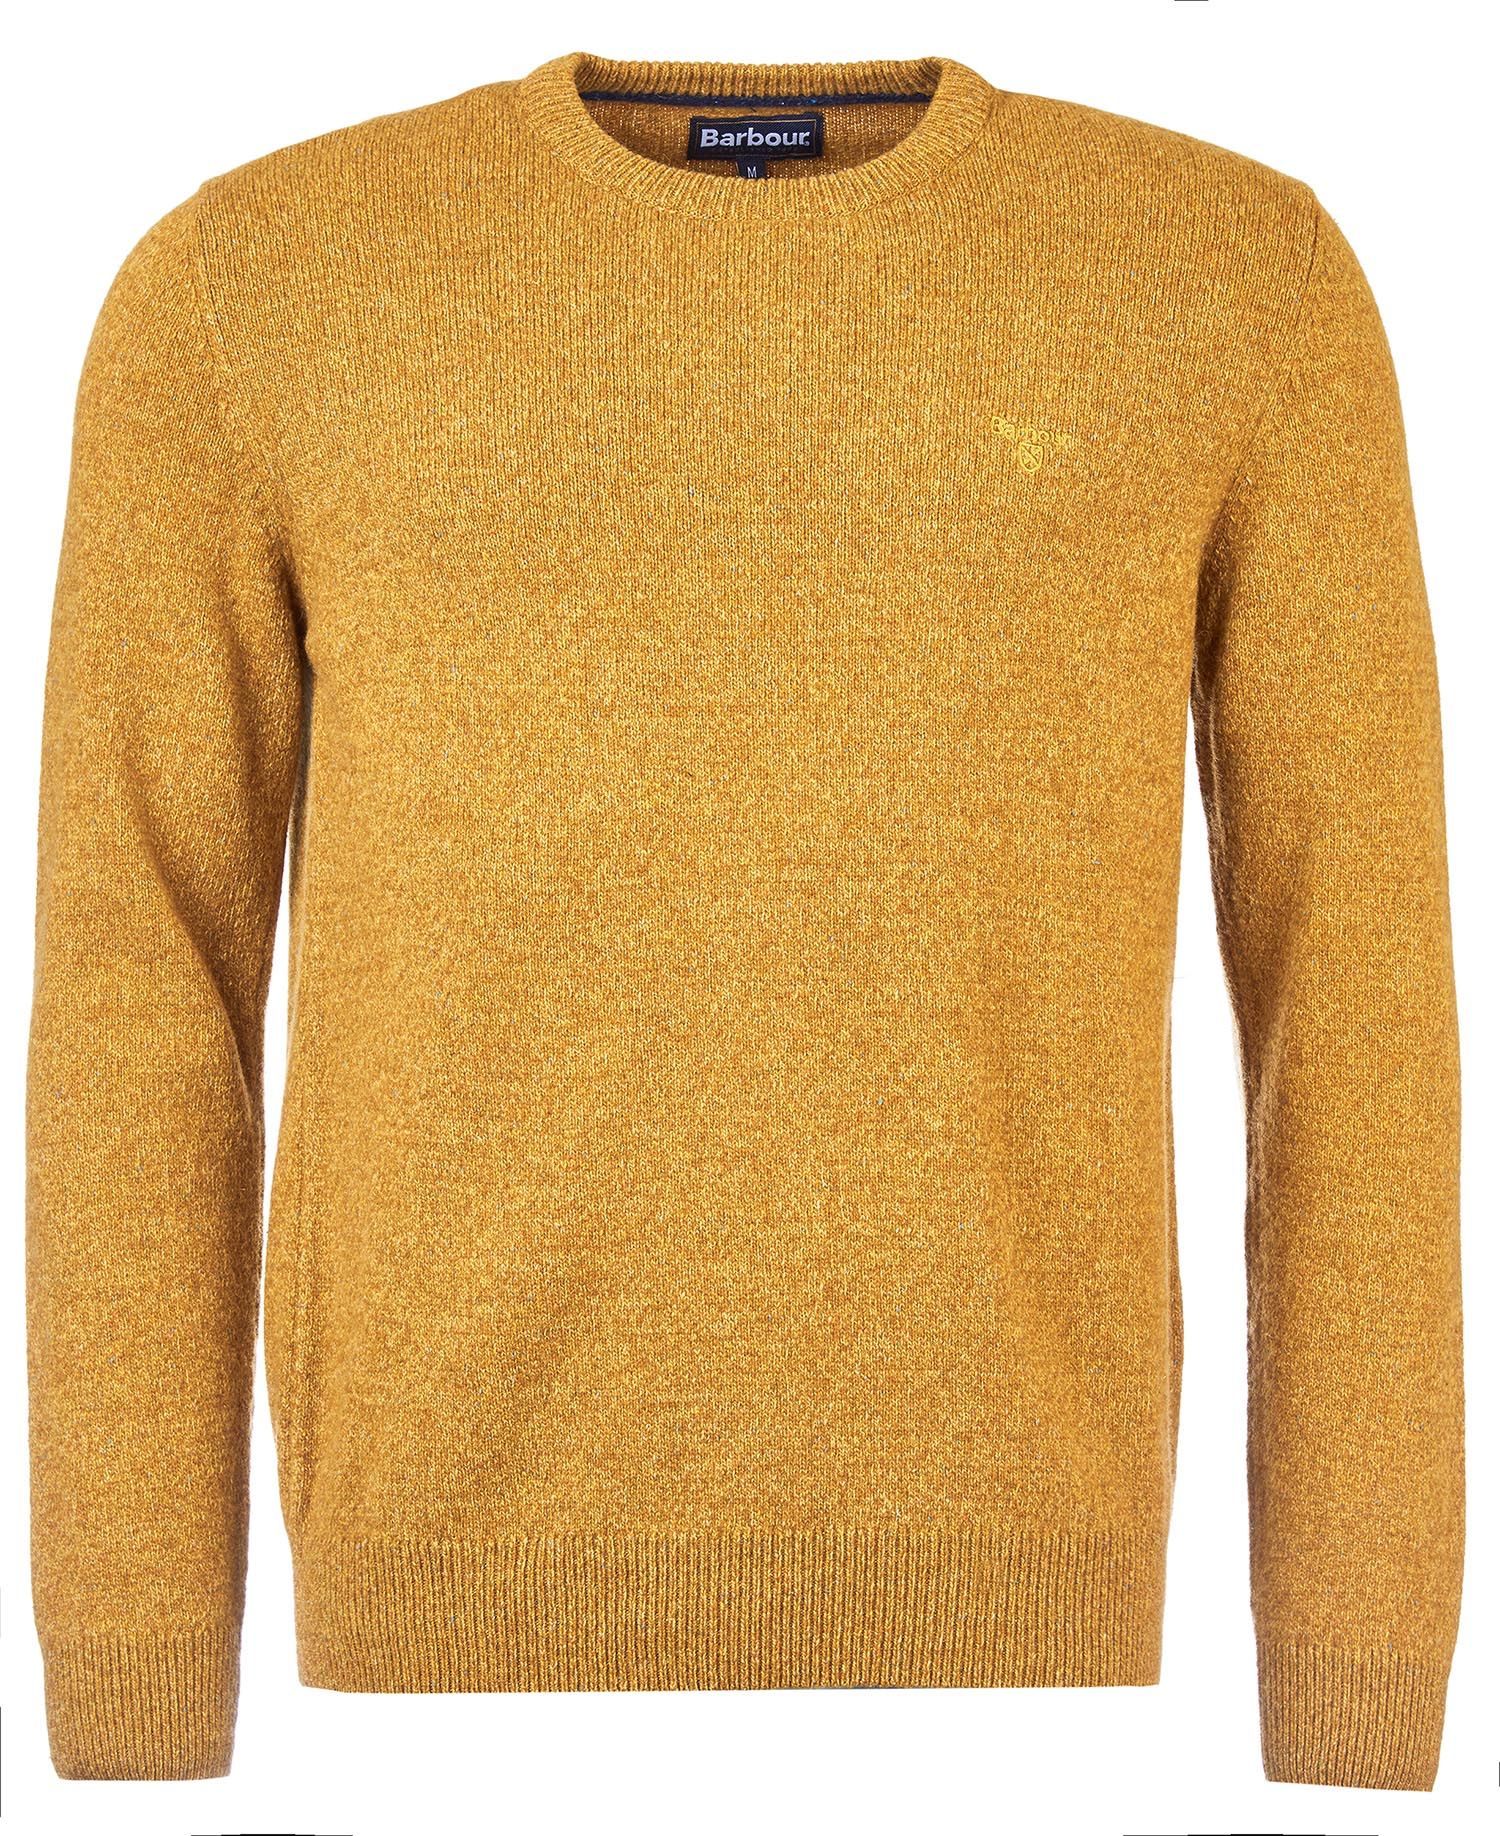 BARBOUR Men's Essential Tisbury Crew Sweater MKN0844 Copper